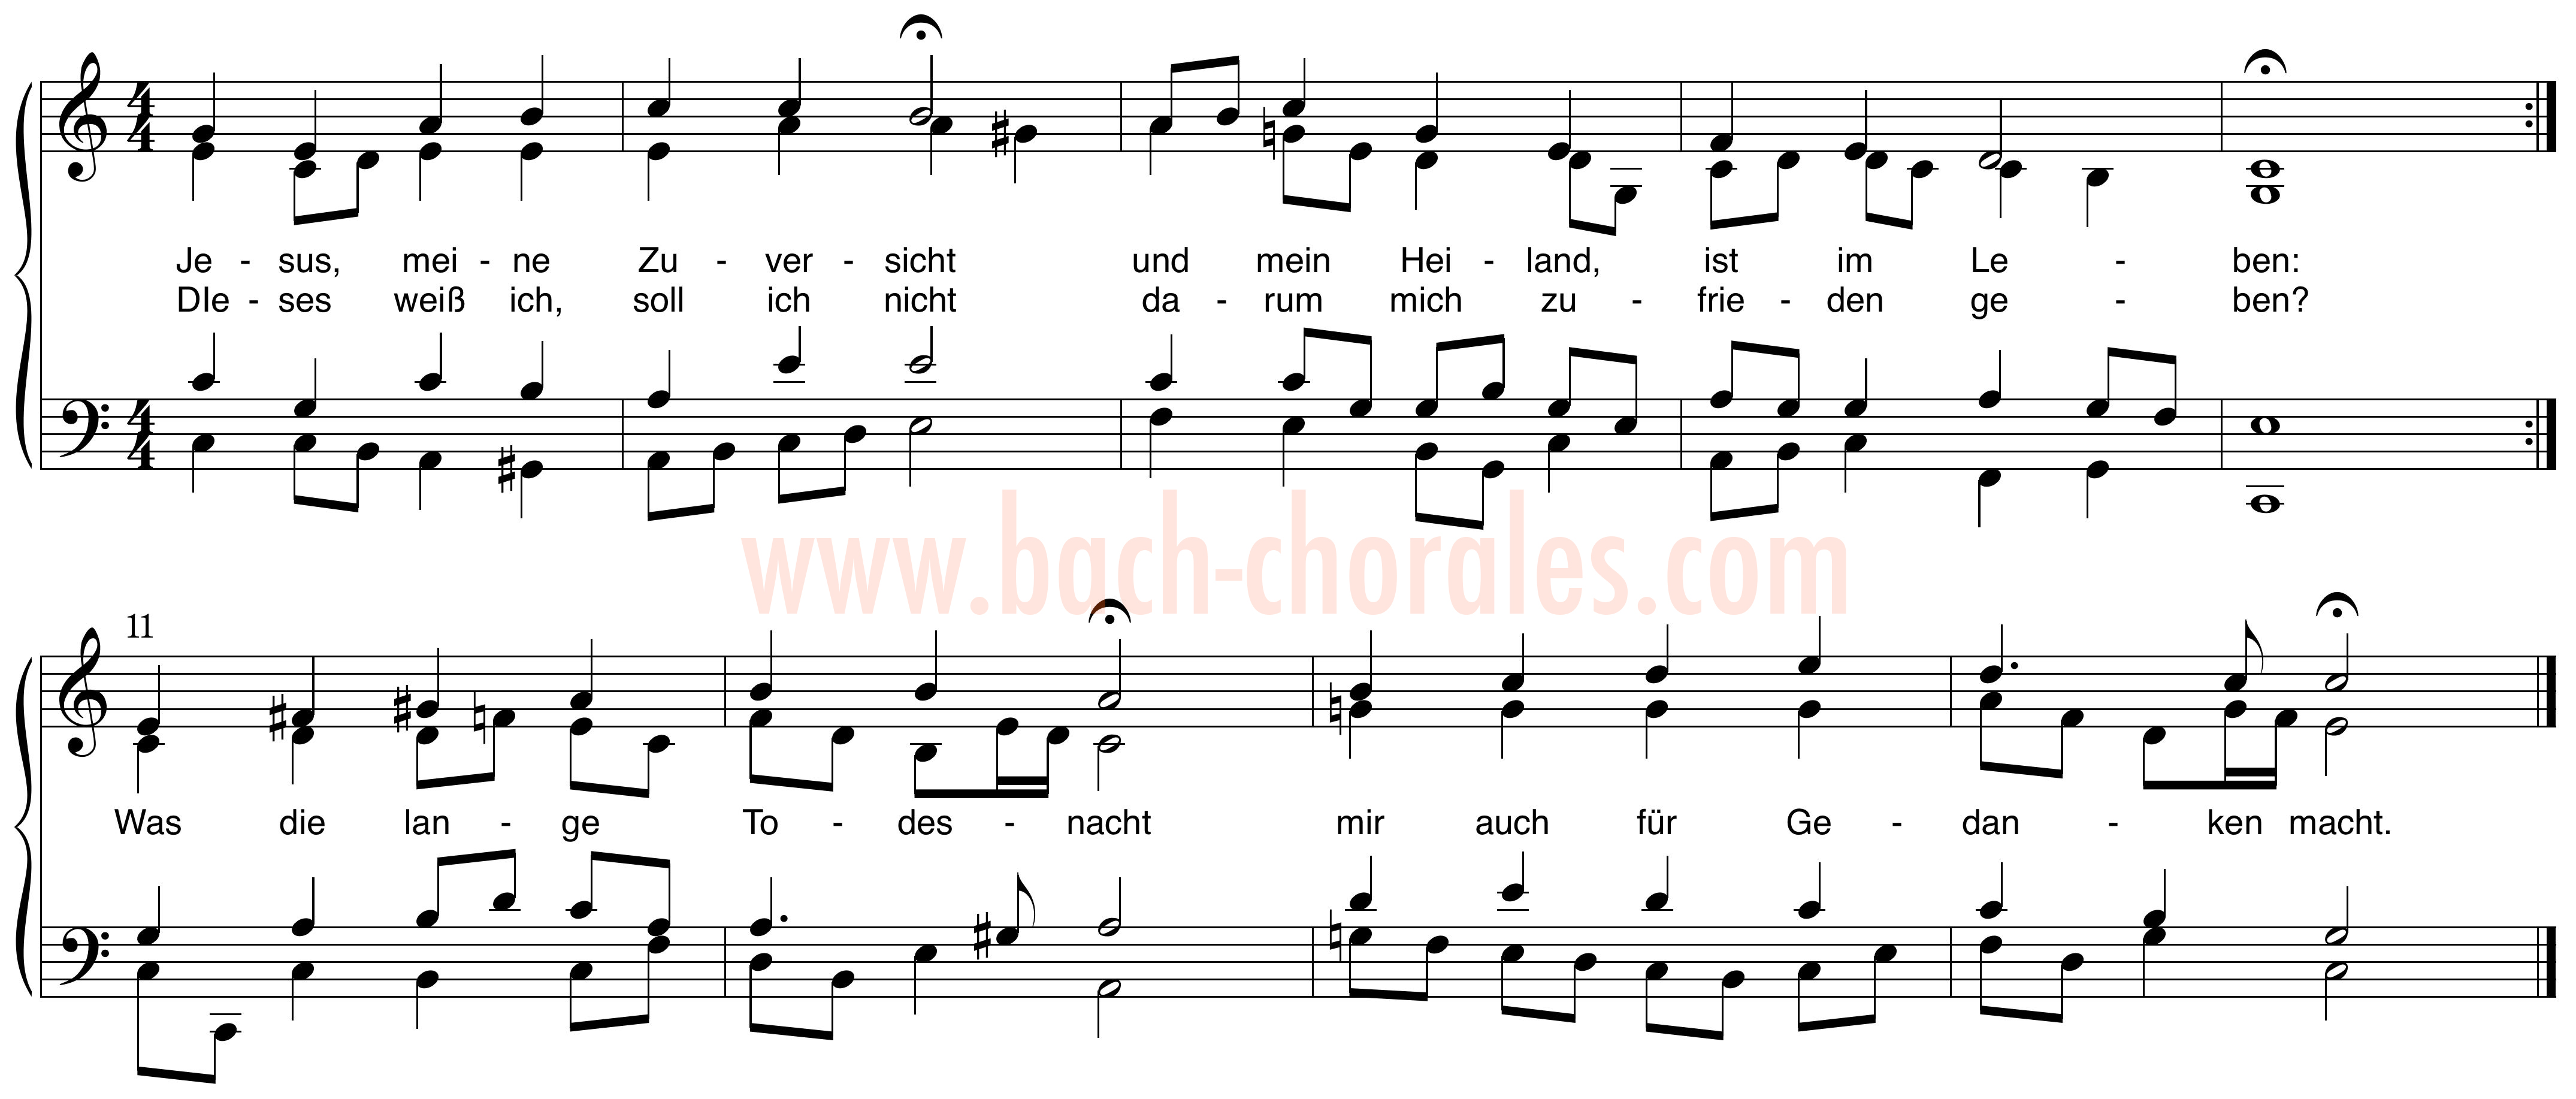 notenbeeld BWV 365 op https://www.bach-chorales.com/